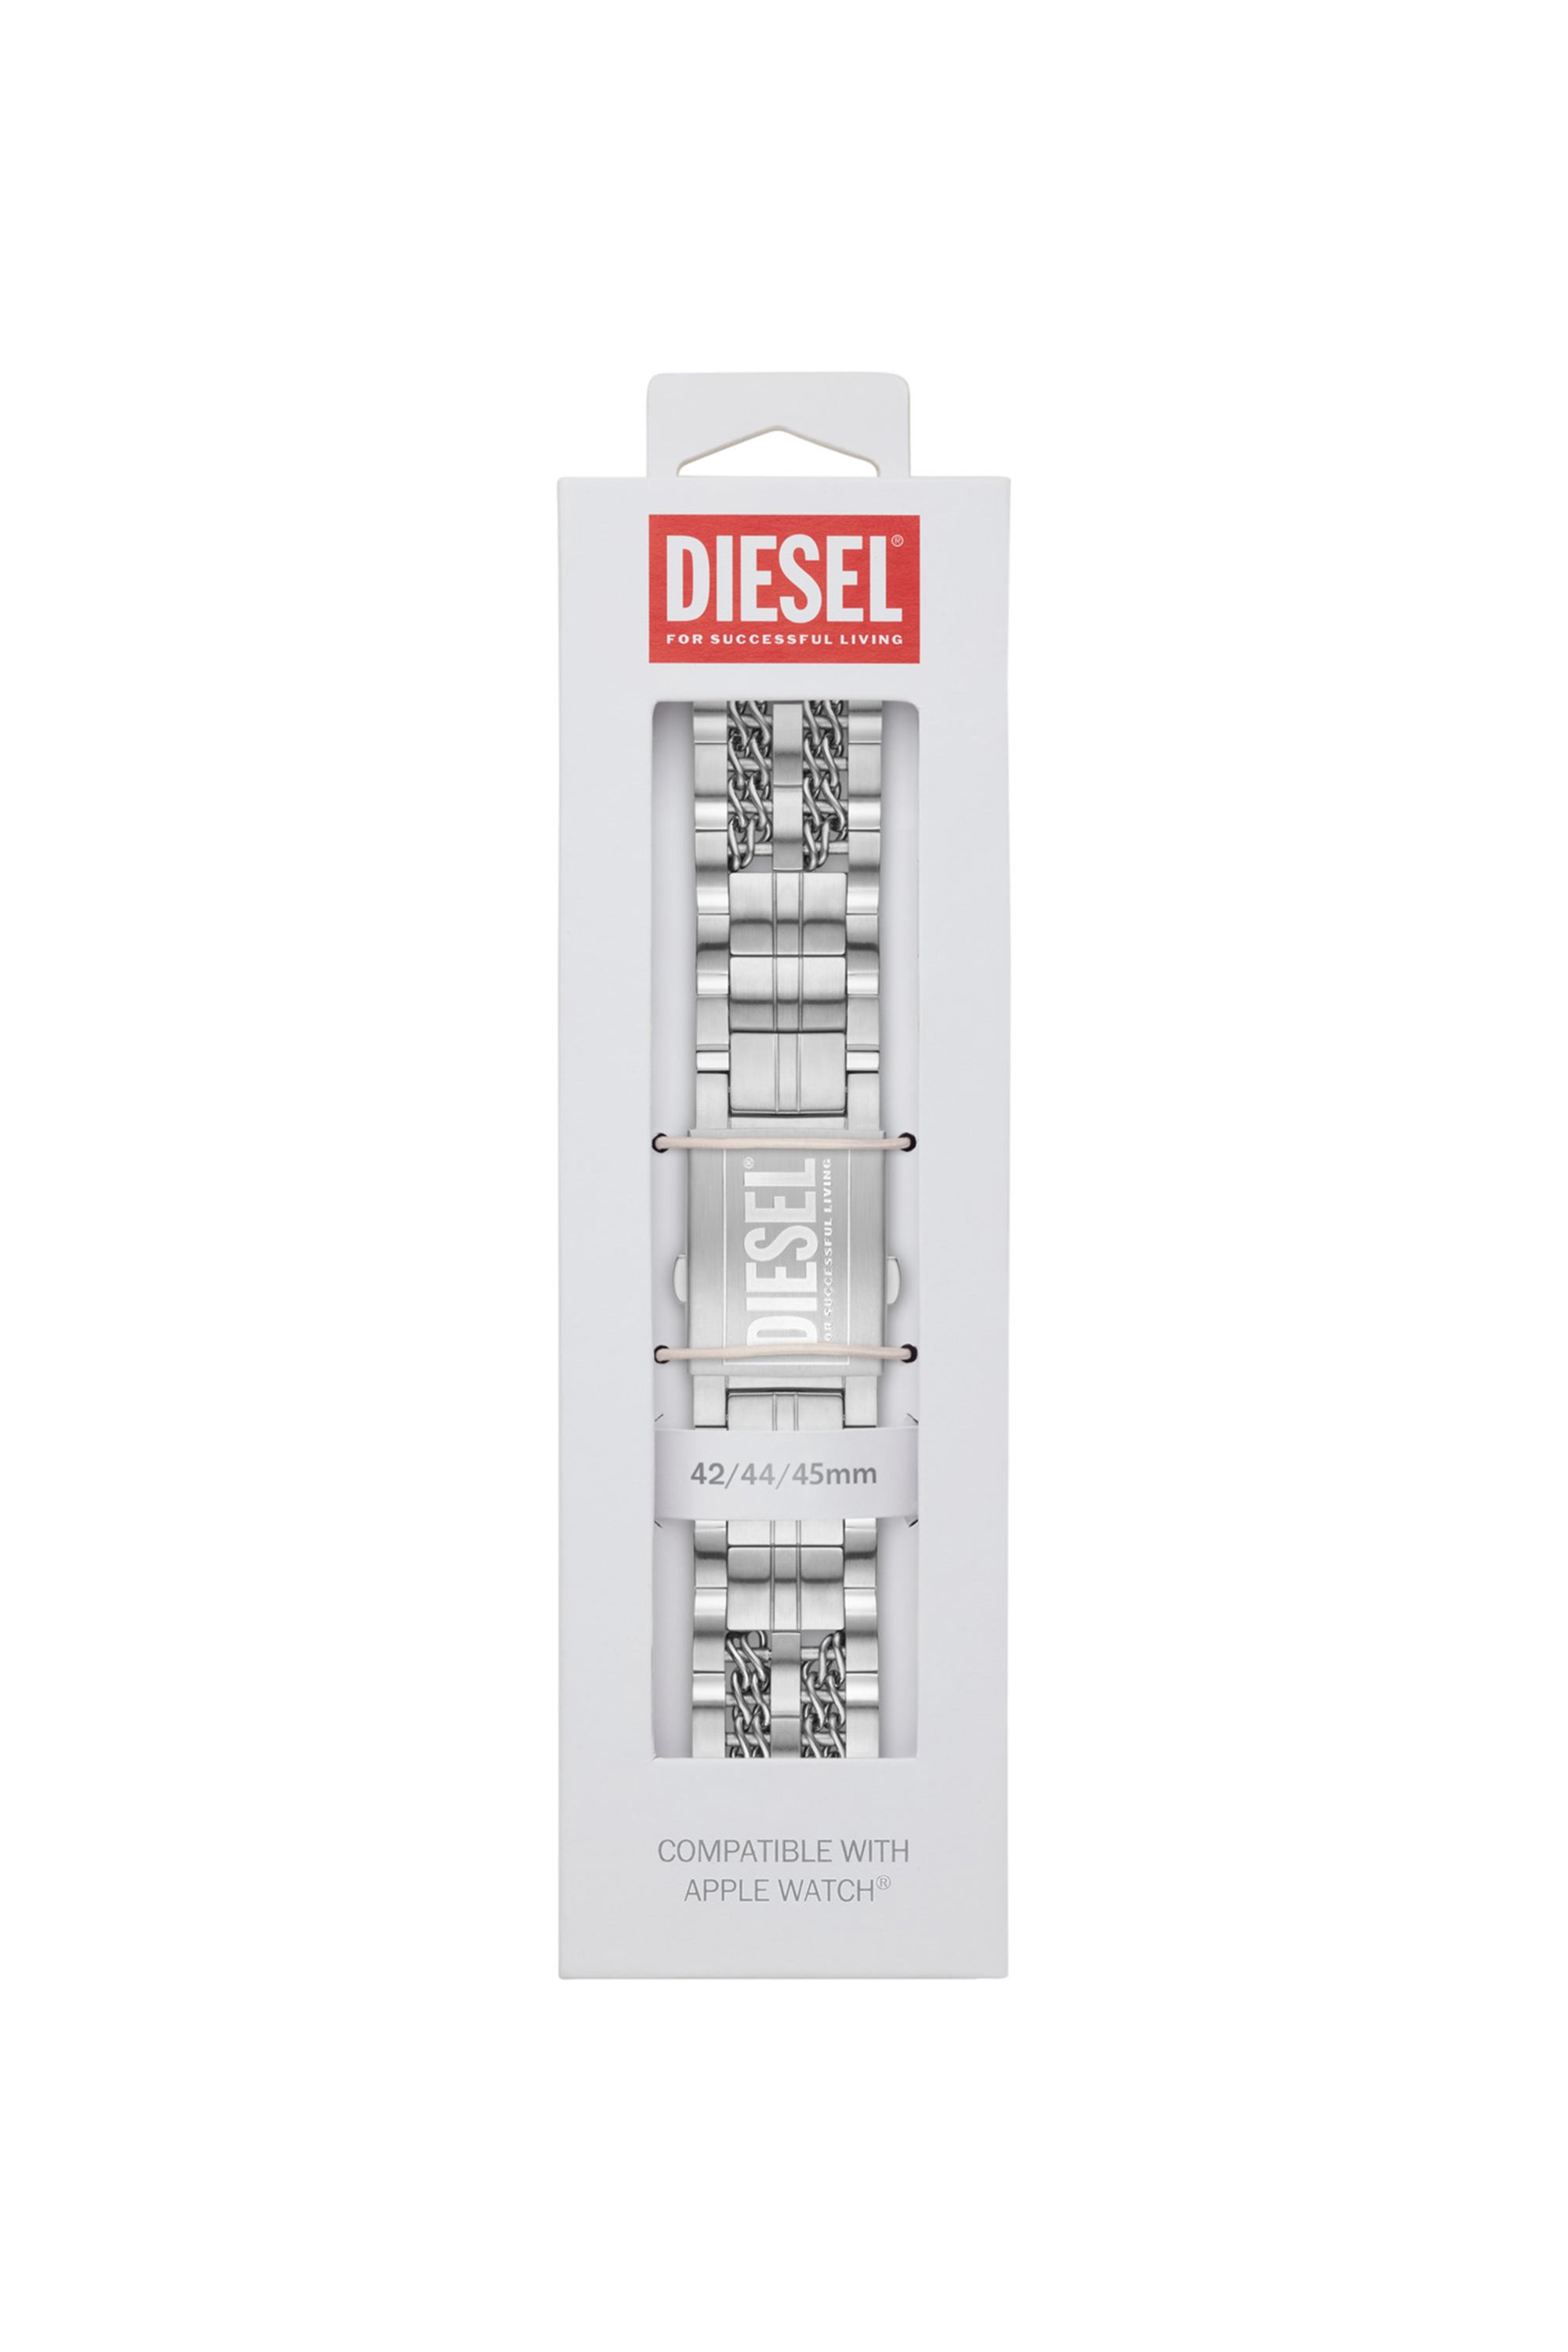 Diesel - DSS008, Grau - Image 2